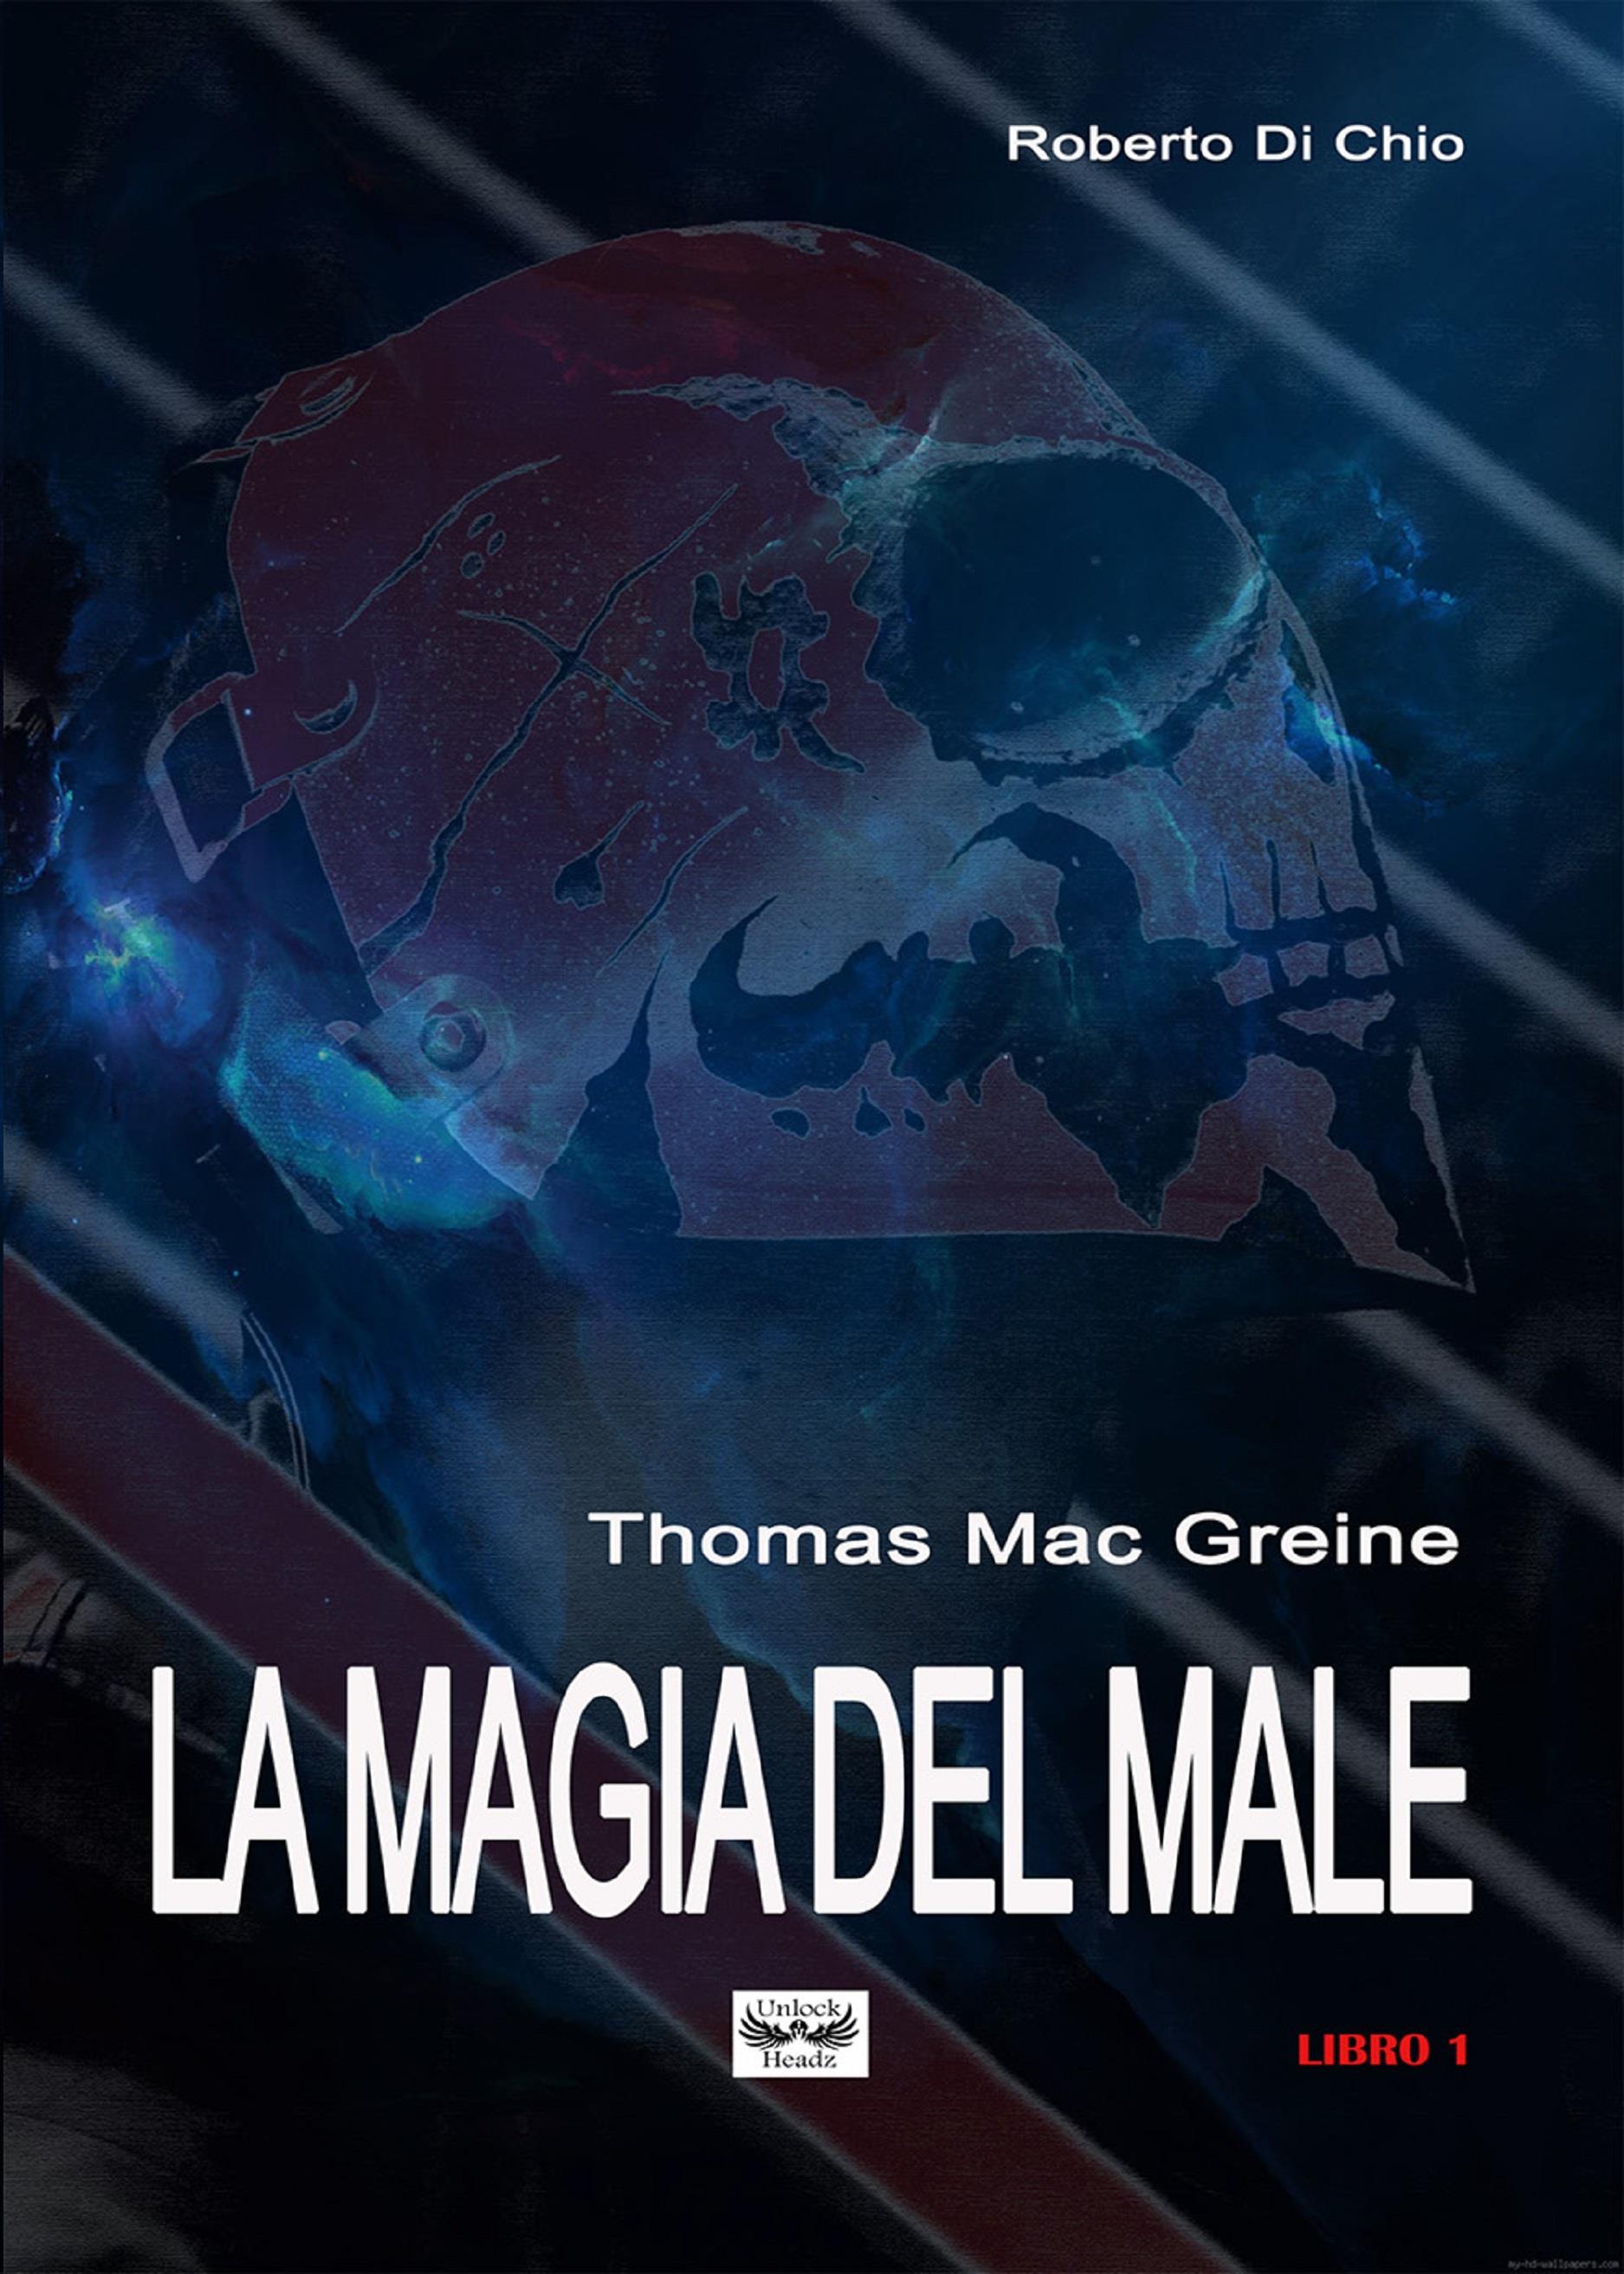 Thomas Mac Greine - La magia del Male